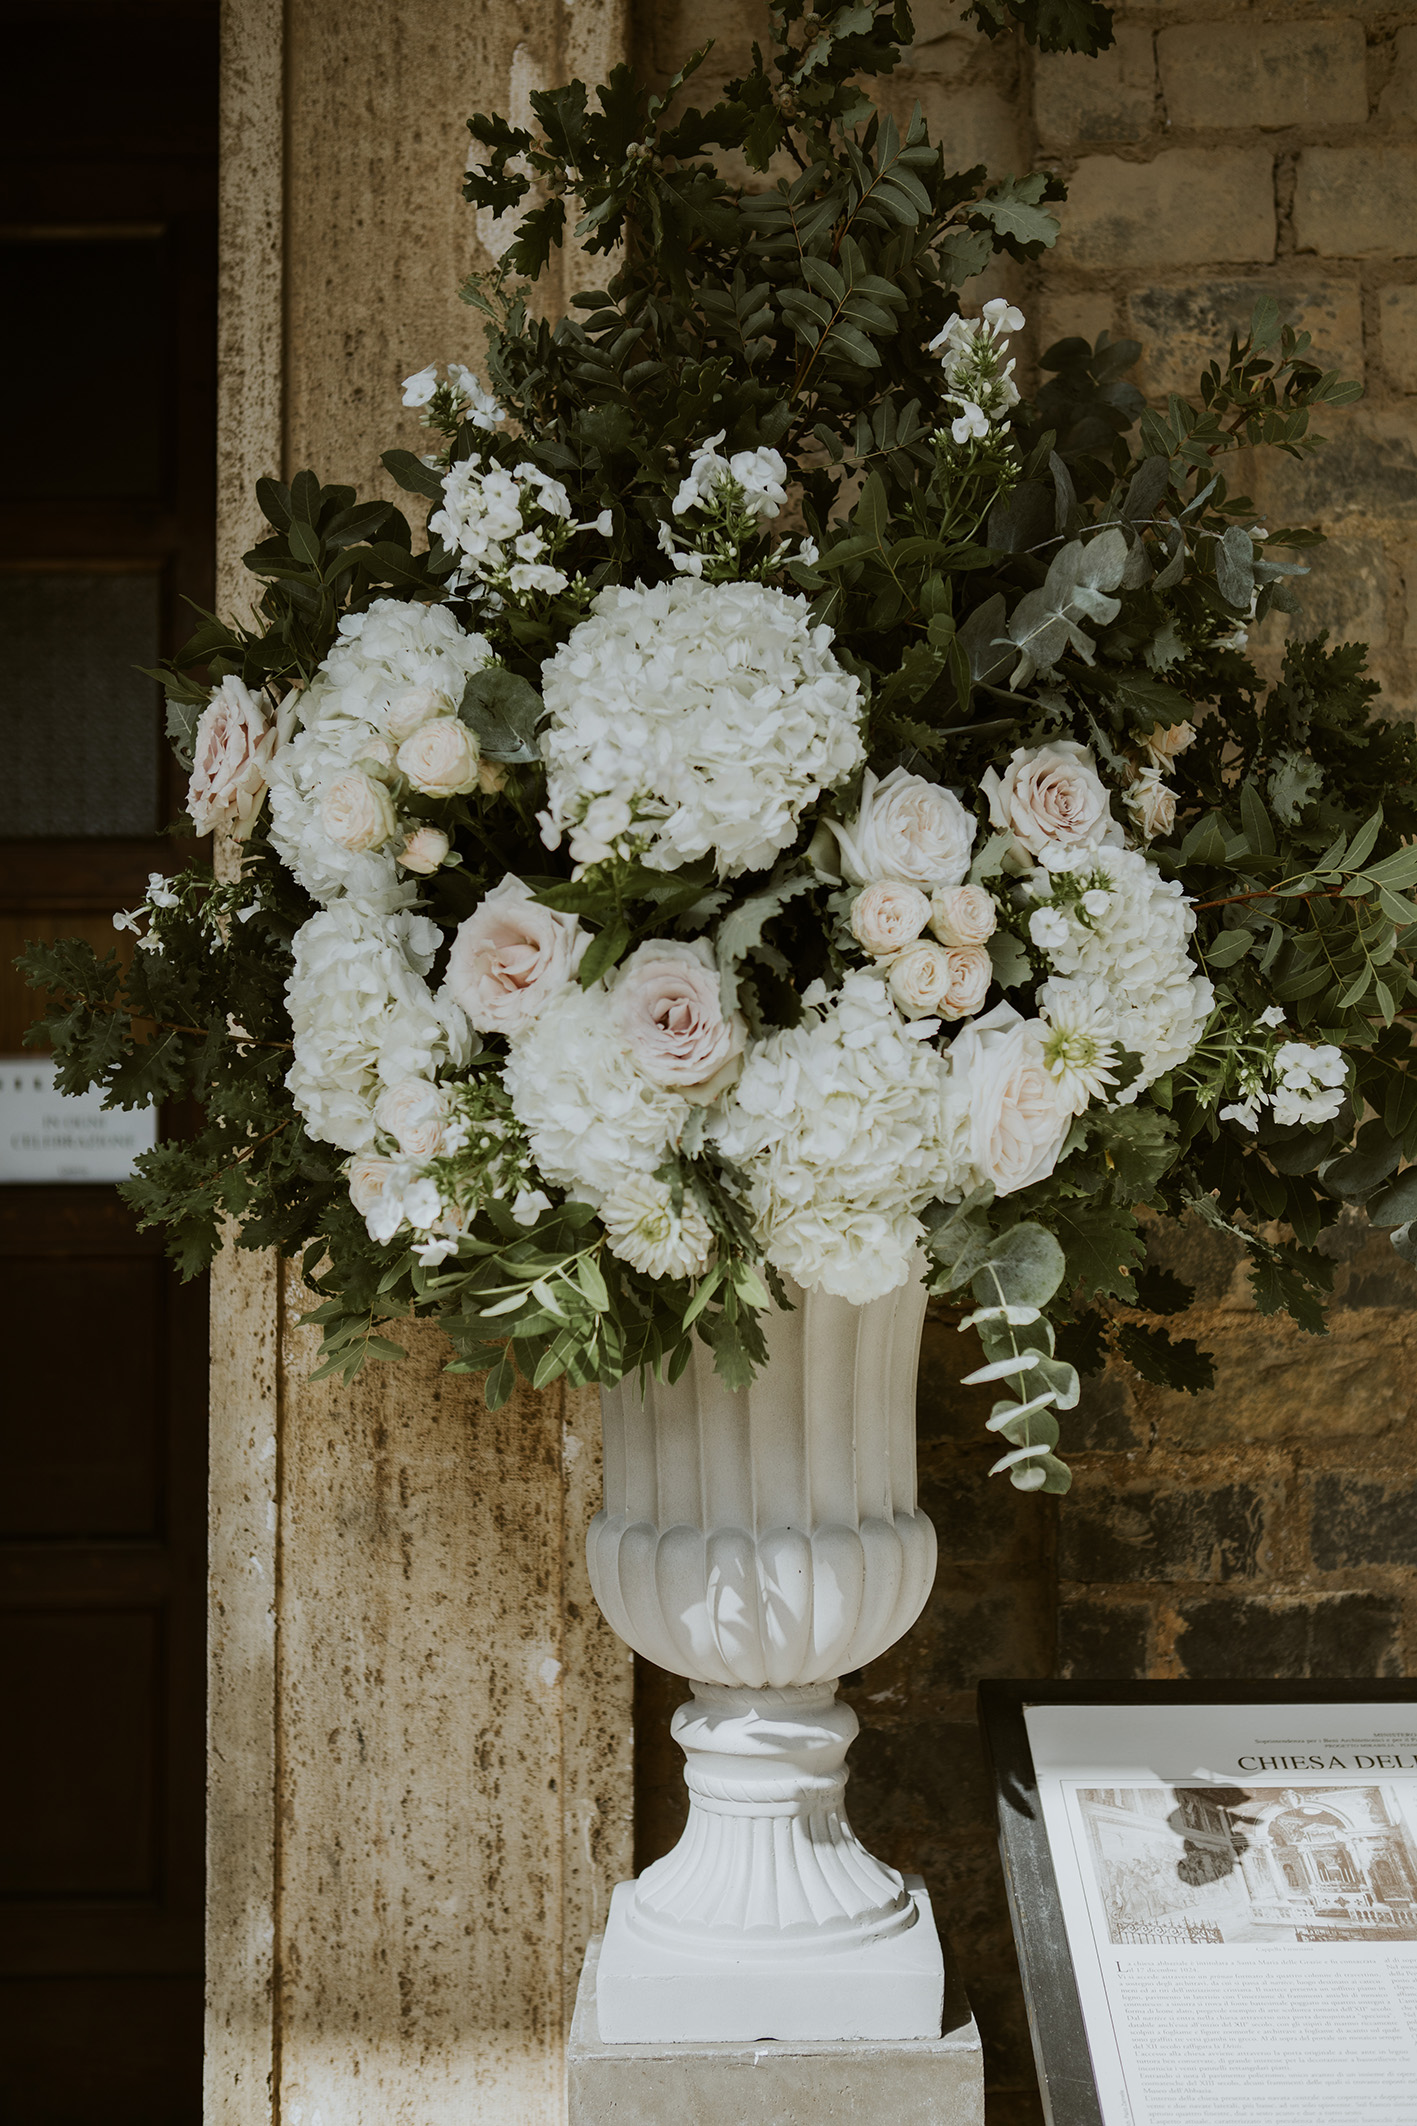 Grande urna bianca all'ingresso della chiesa, con ortensie e rose bianche e verdi misti